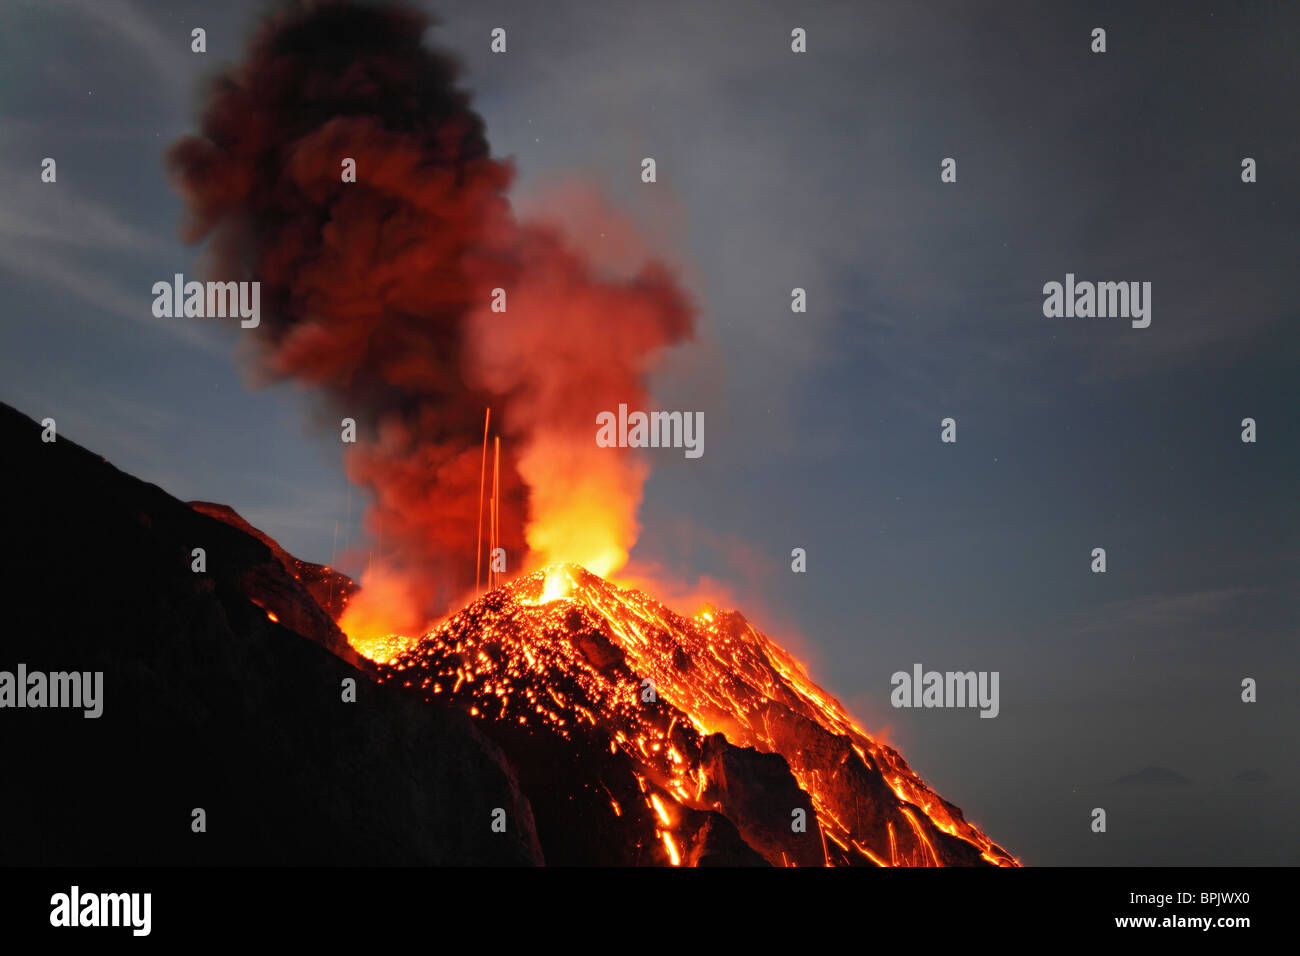 Mayo 10, 2009 - Stromboli erupción, las Islas Eolias, al norte de Sicilia, Italia. Foto de stock